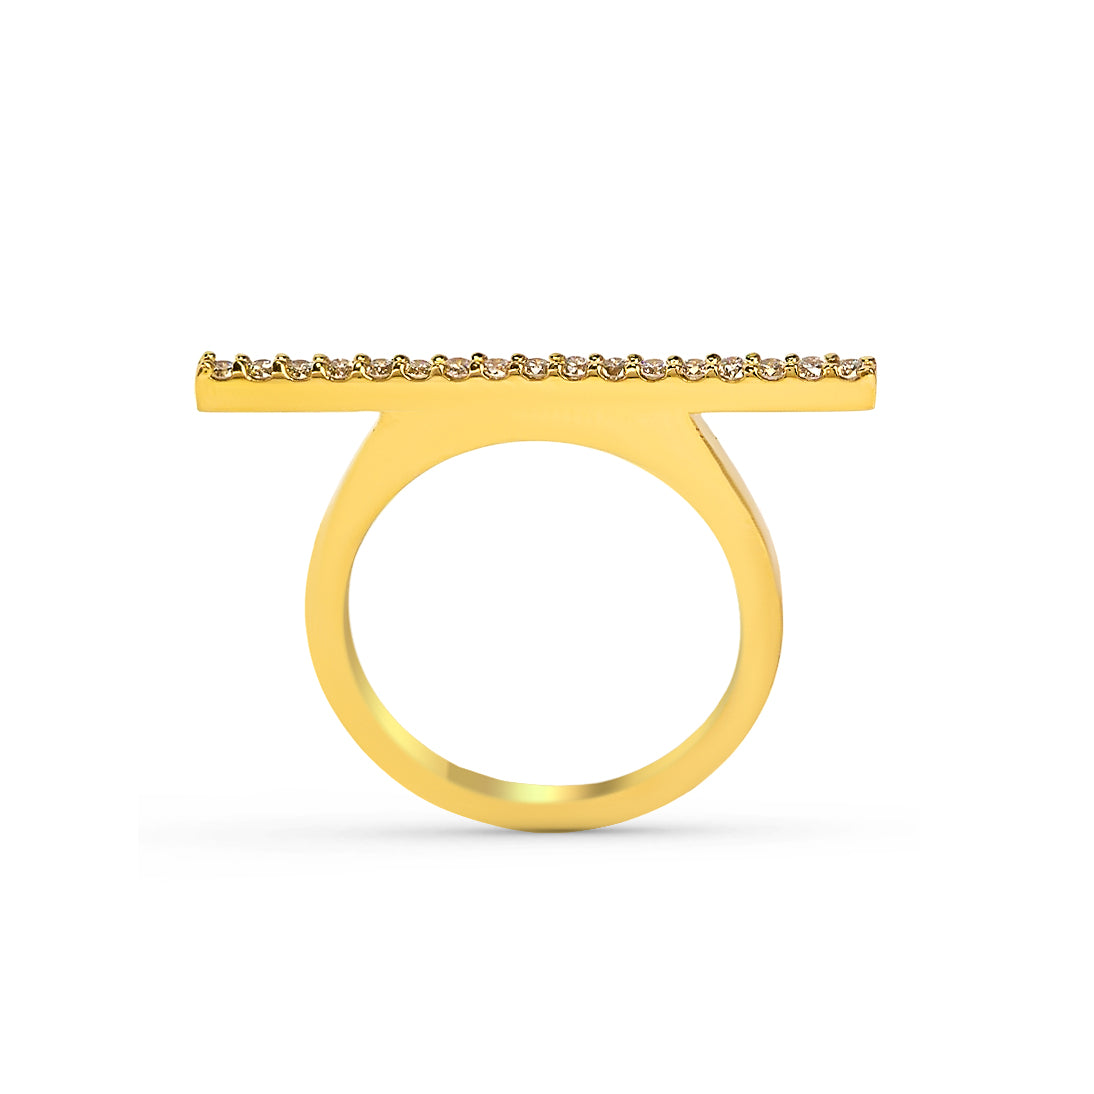 horizontal bar ring, personalized bar ring, rose gold bar ring